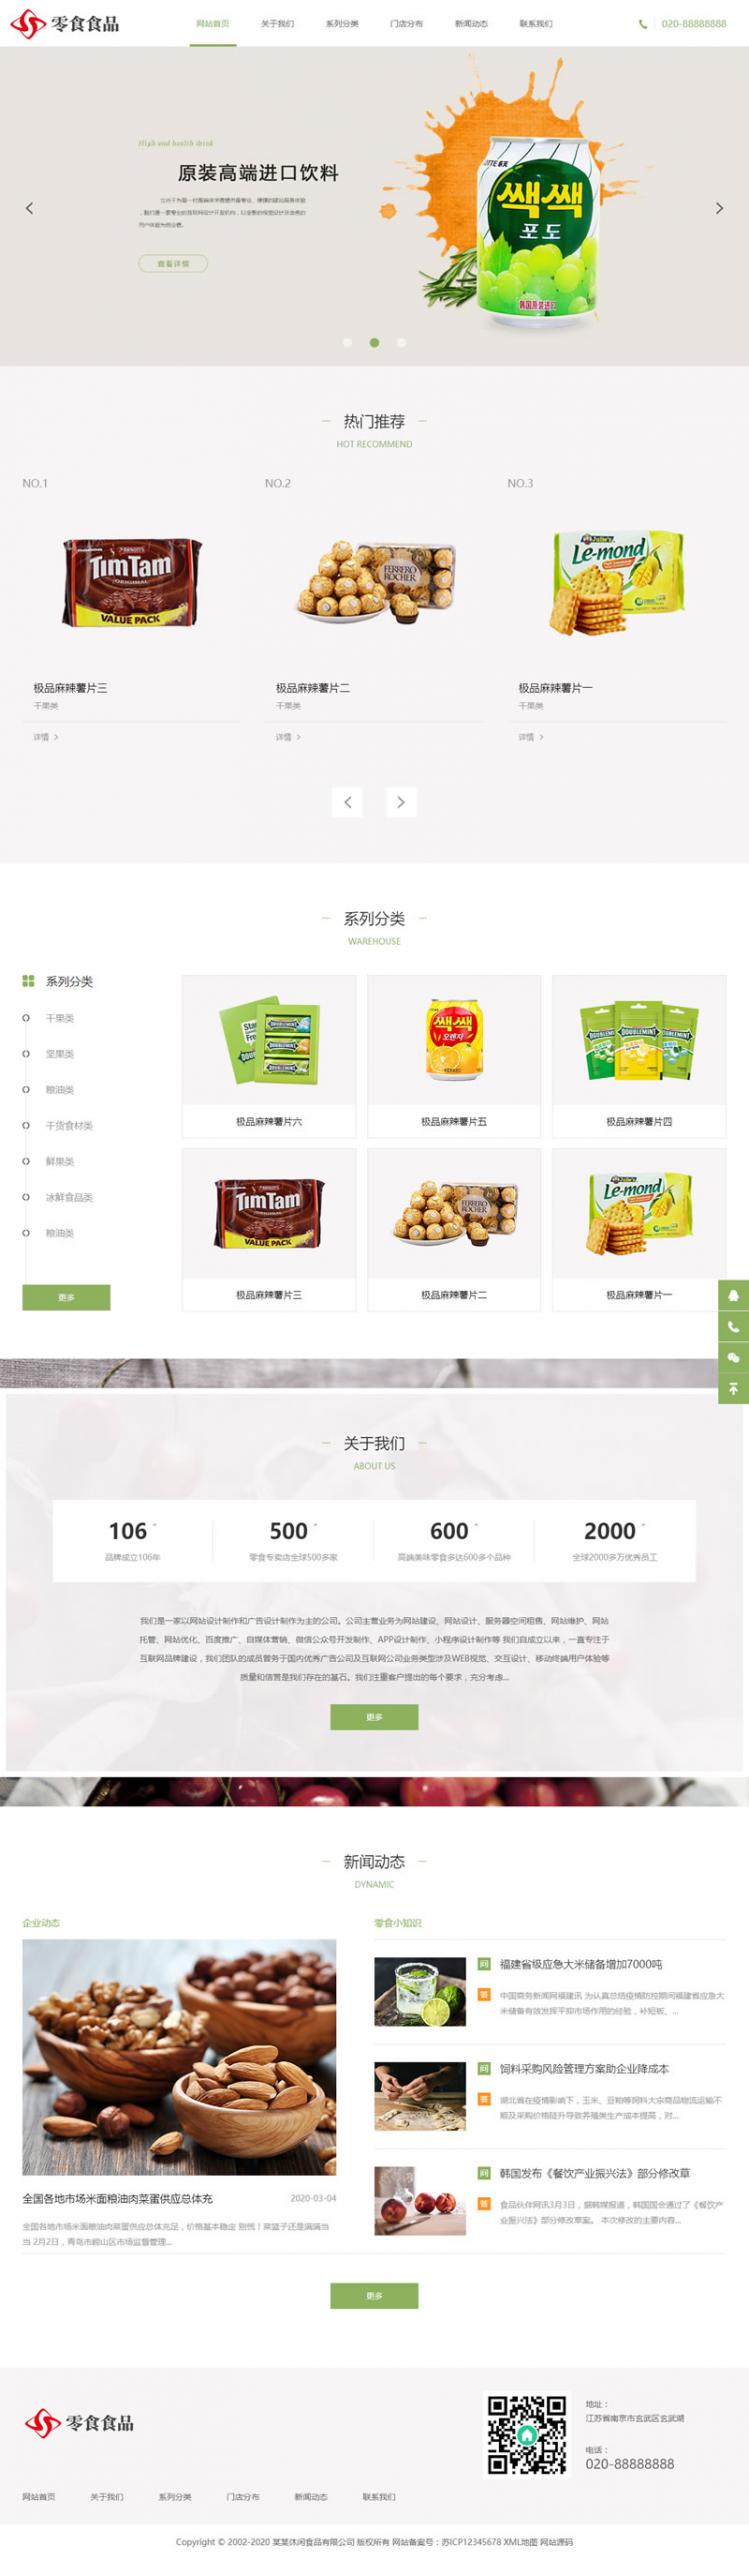 (自适应手机版)响应式日化食品零食类c HTML5零食连锁加盟店网站织梦模板插图